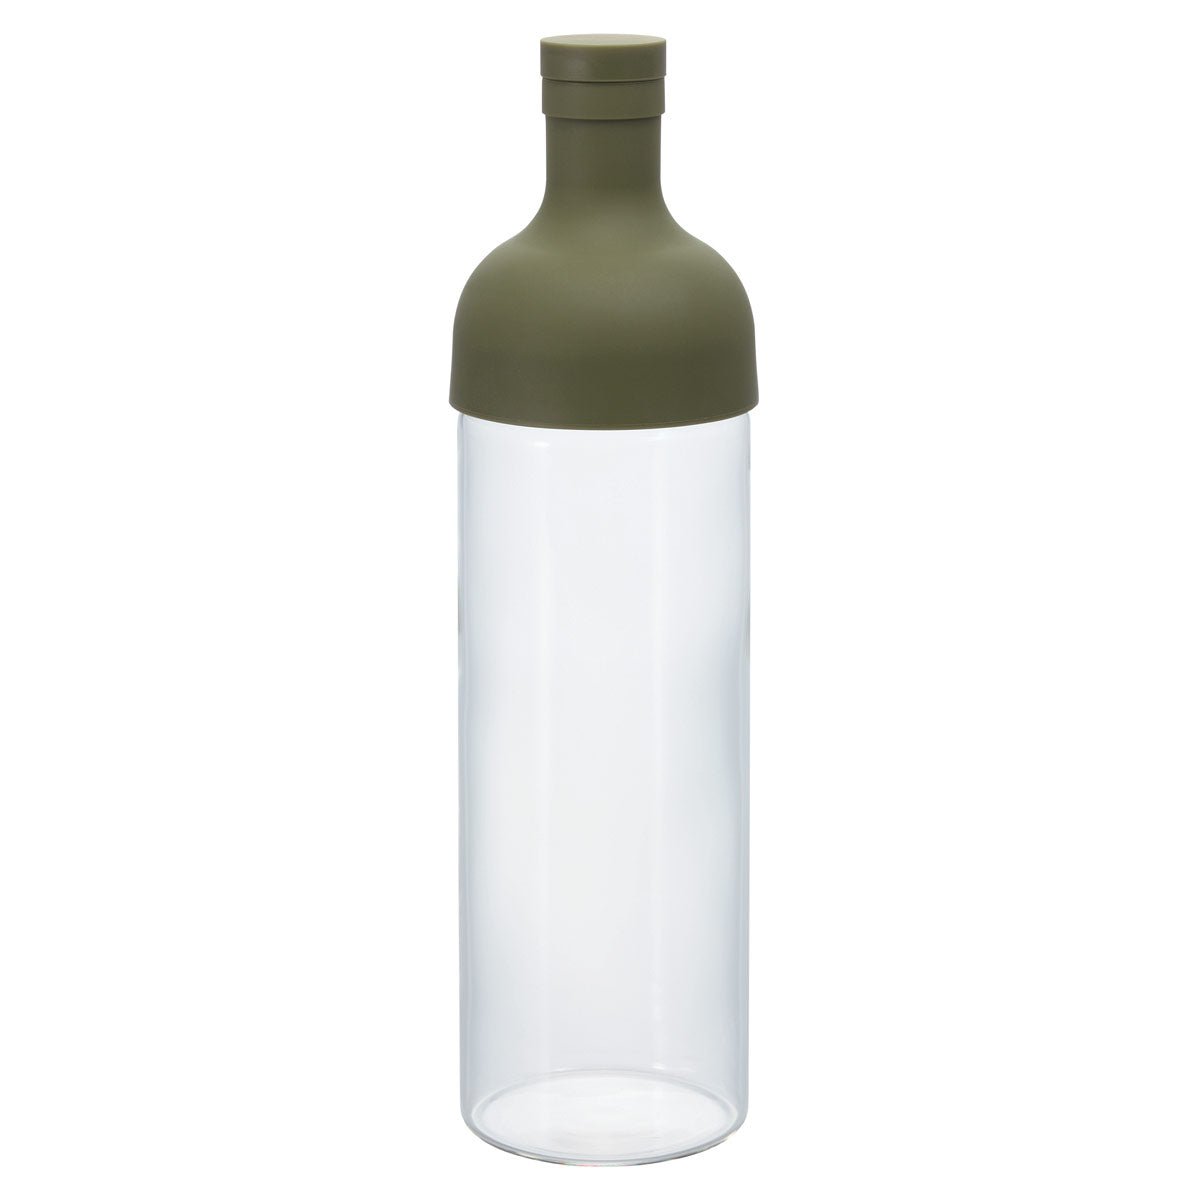 Filter in Bottle von Hario, für Cold Brew Tea oder Infused Water - carabica - fine coffee culture